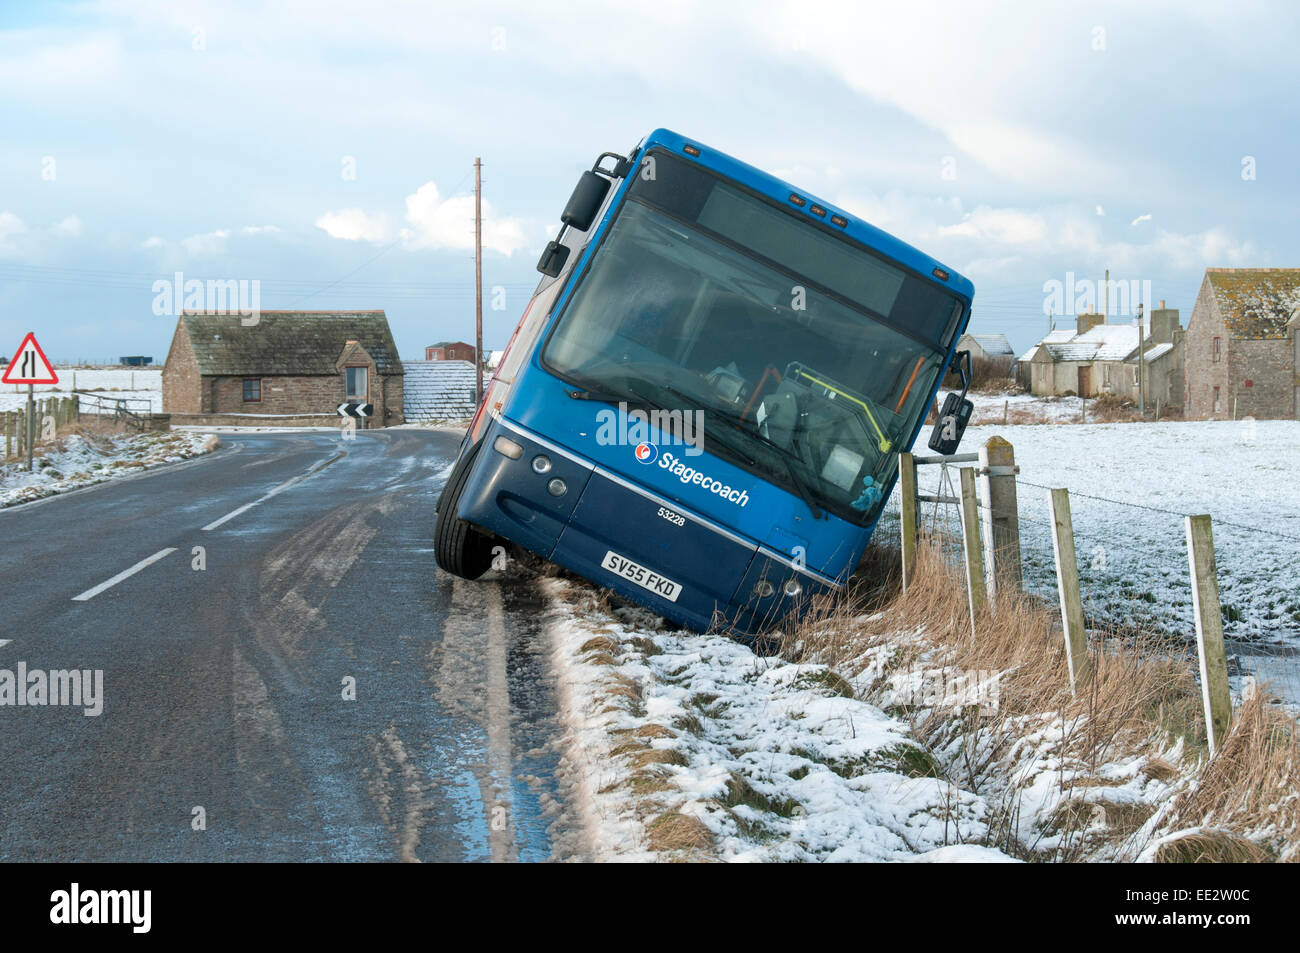 Ein Bus rutschte in einen Graben nach einer Nacht Schneefall und Temperaturen unter dem Gefrierpunkt zu eisigen Bedingungen auf der Straße geführt. Auf der A836-Straße in der Nähe von John o' Groats, Caithness, Schottland, UK Stockfoto